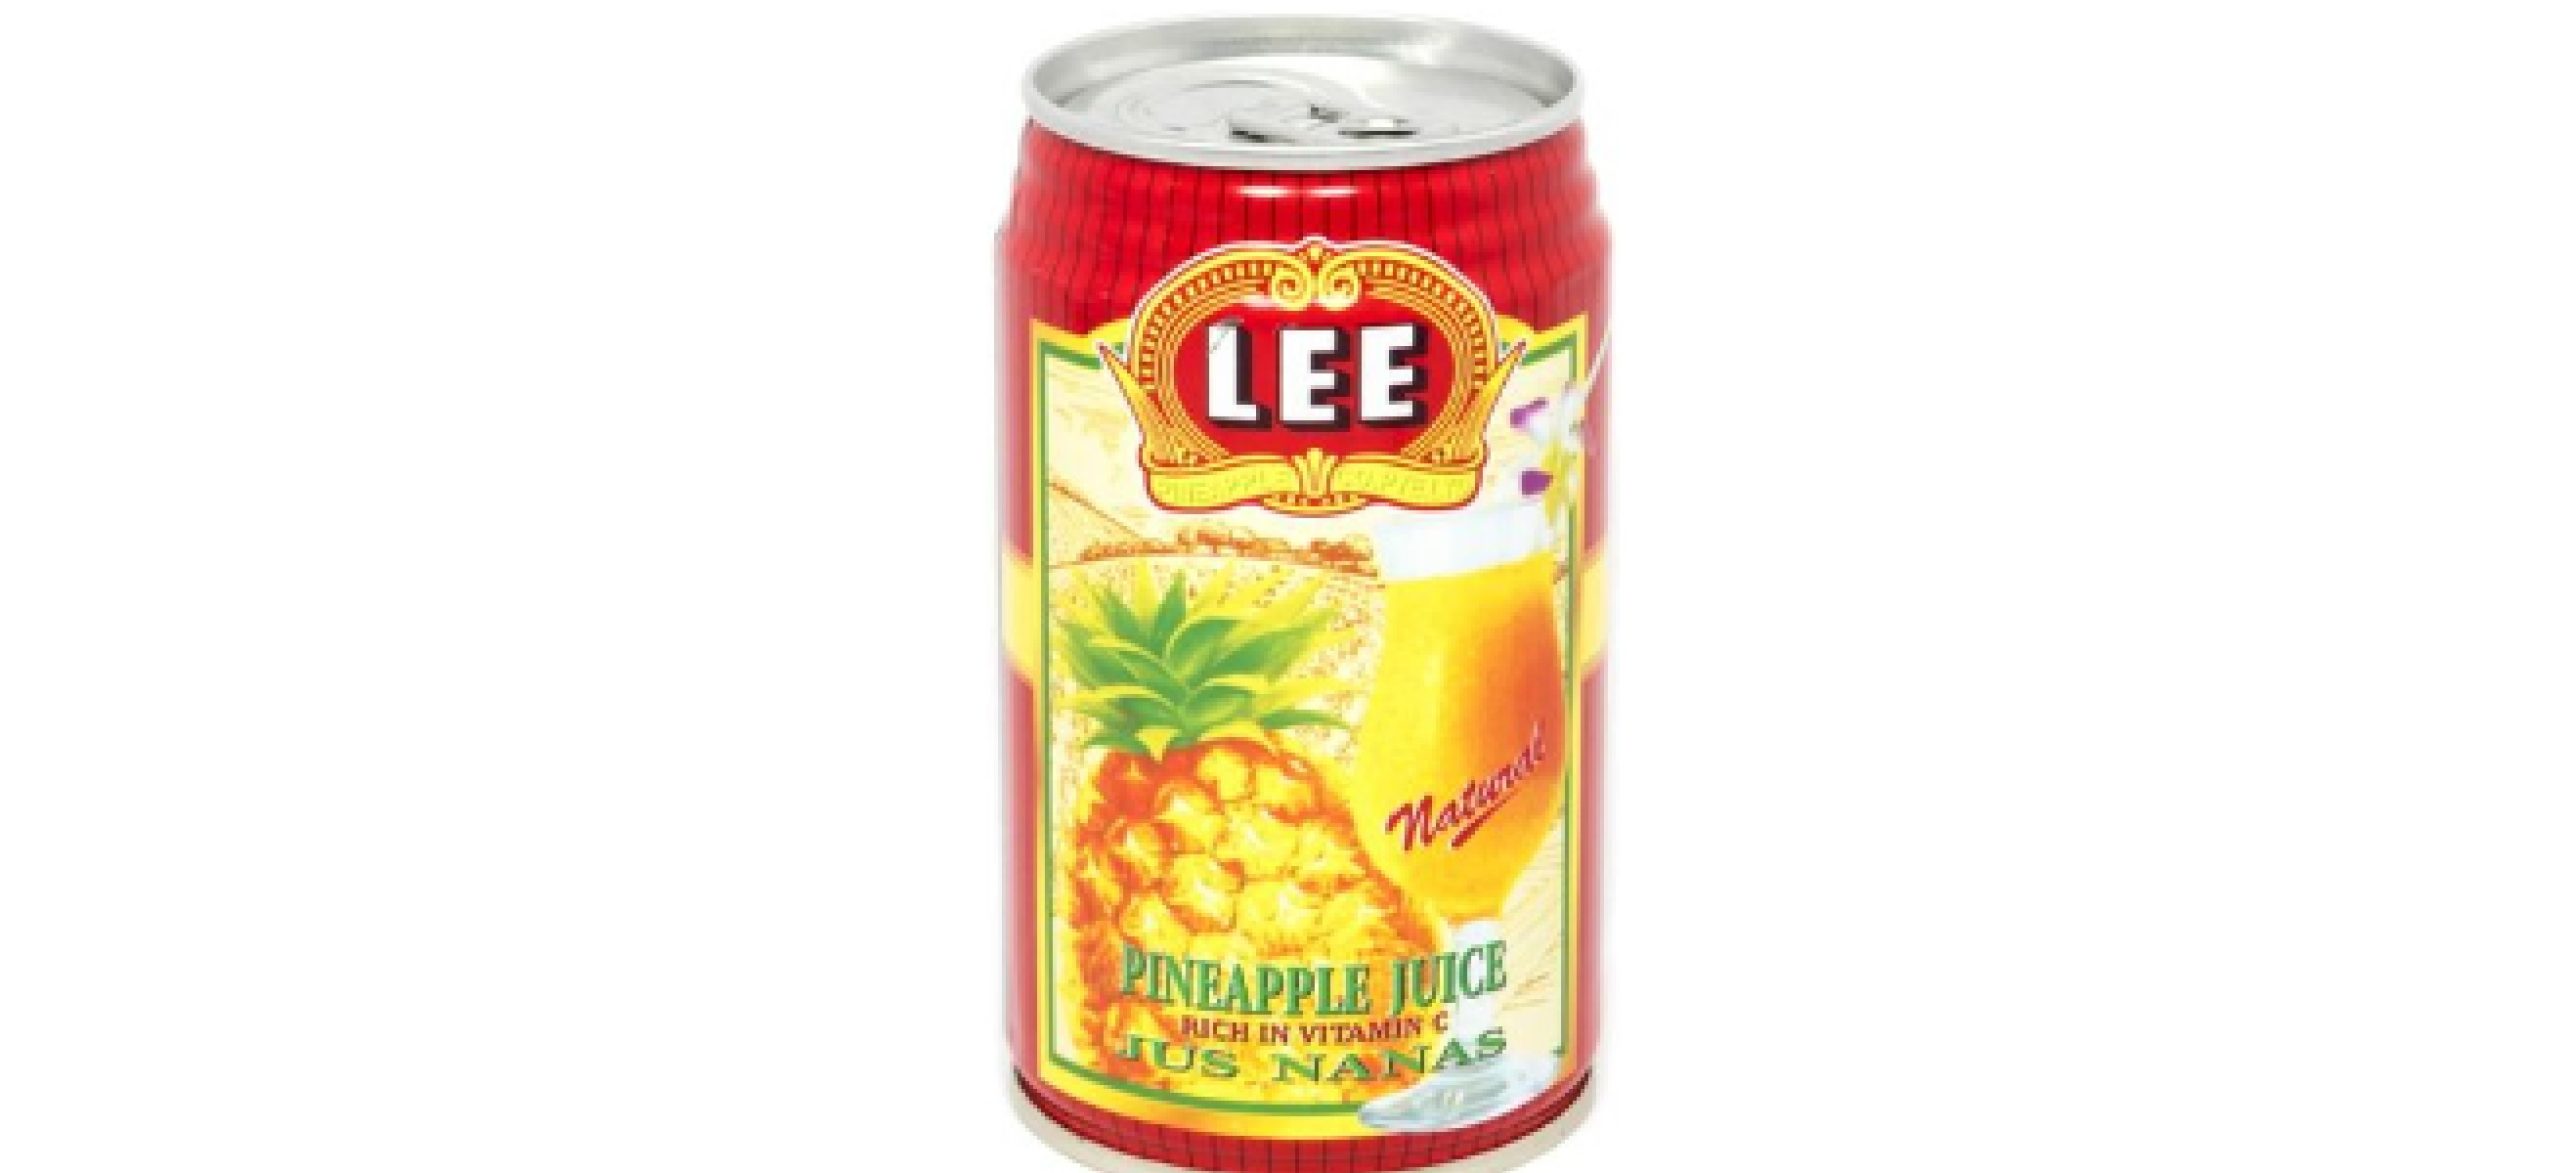 LEE Pineapple juice -325ml